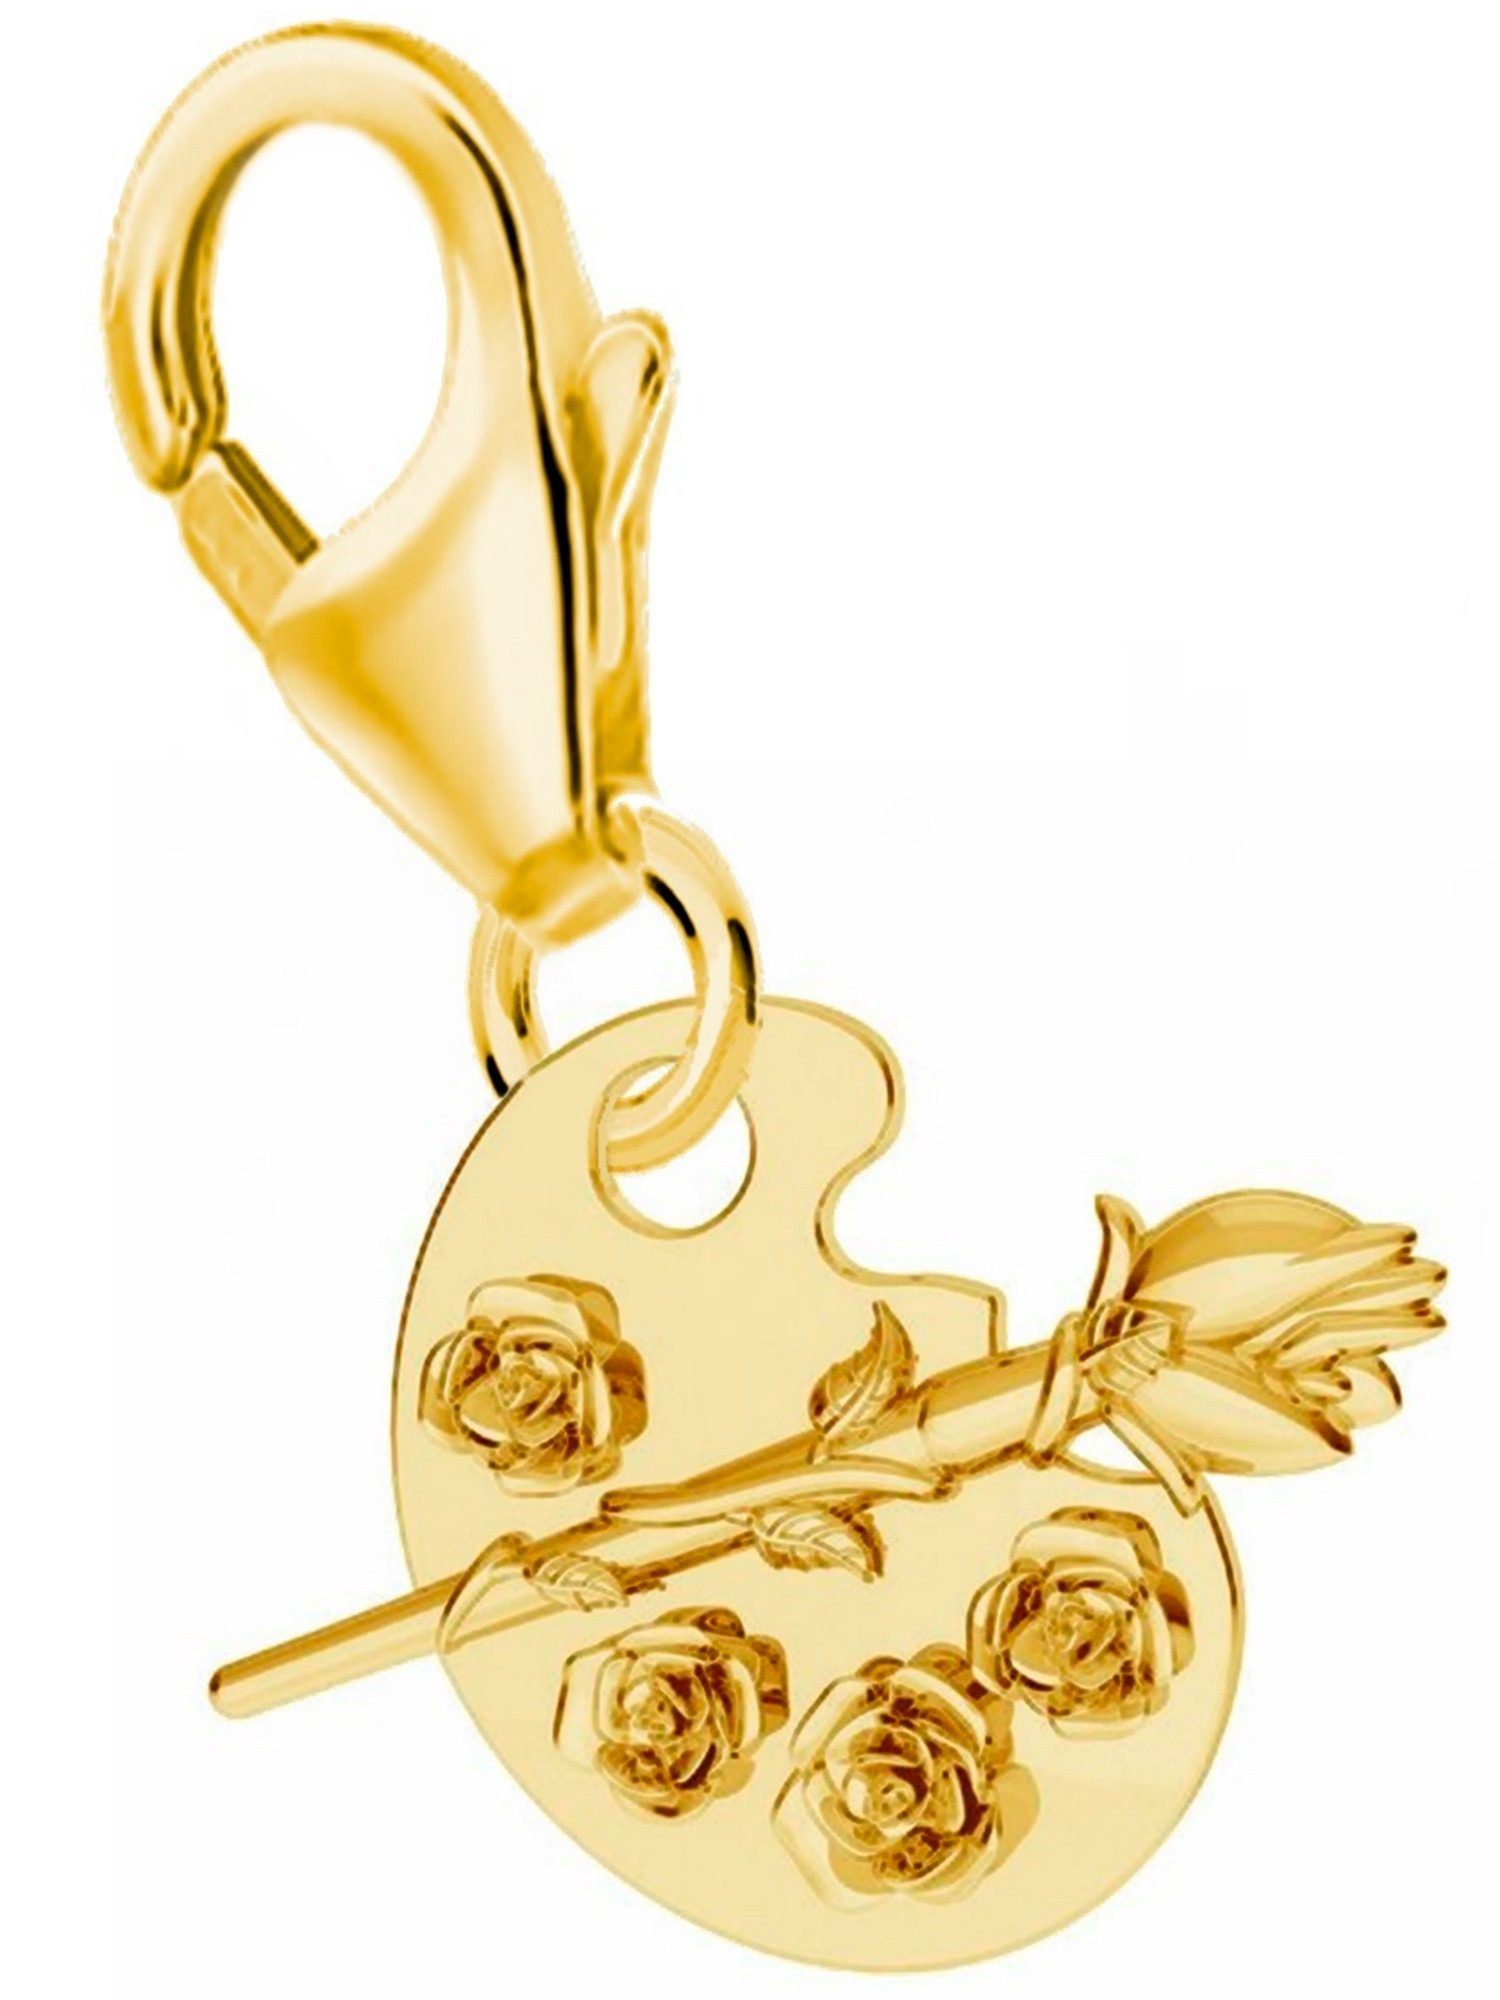 Goldene Hufeisen Charm Blume Rose Blume Karabiner Charm 925 Sterling Silber Gold Vergoldet